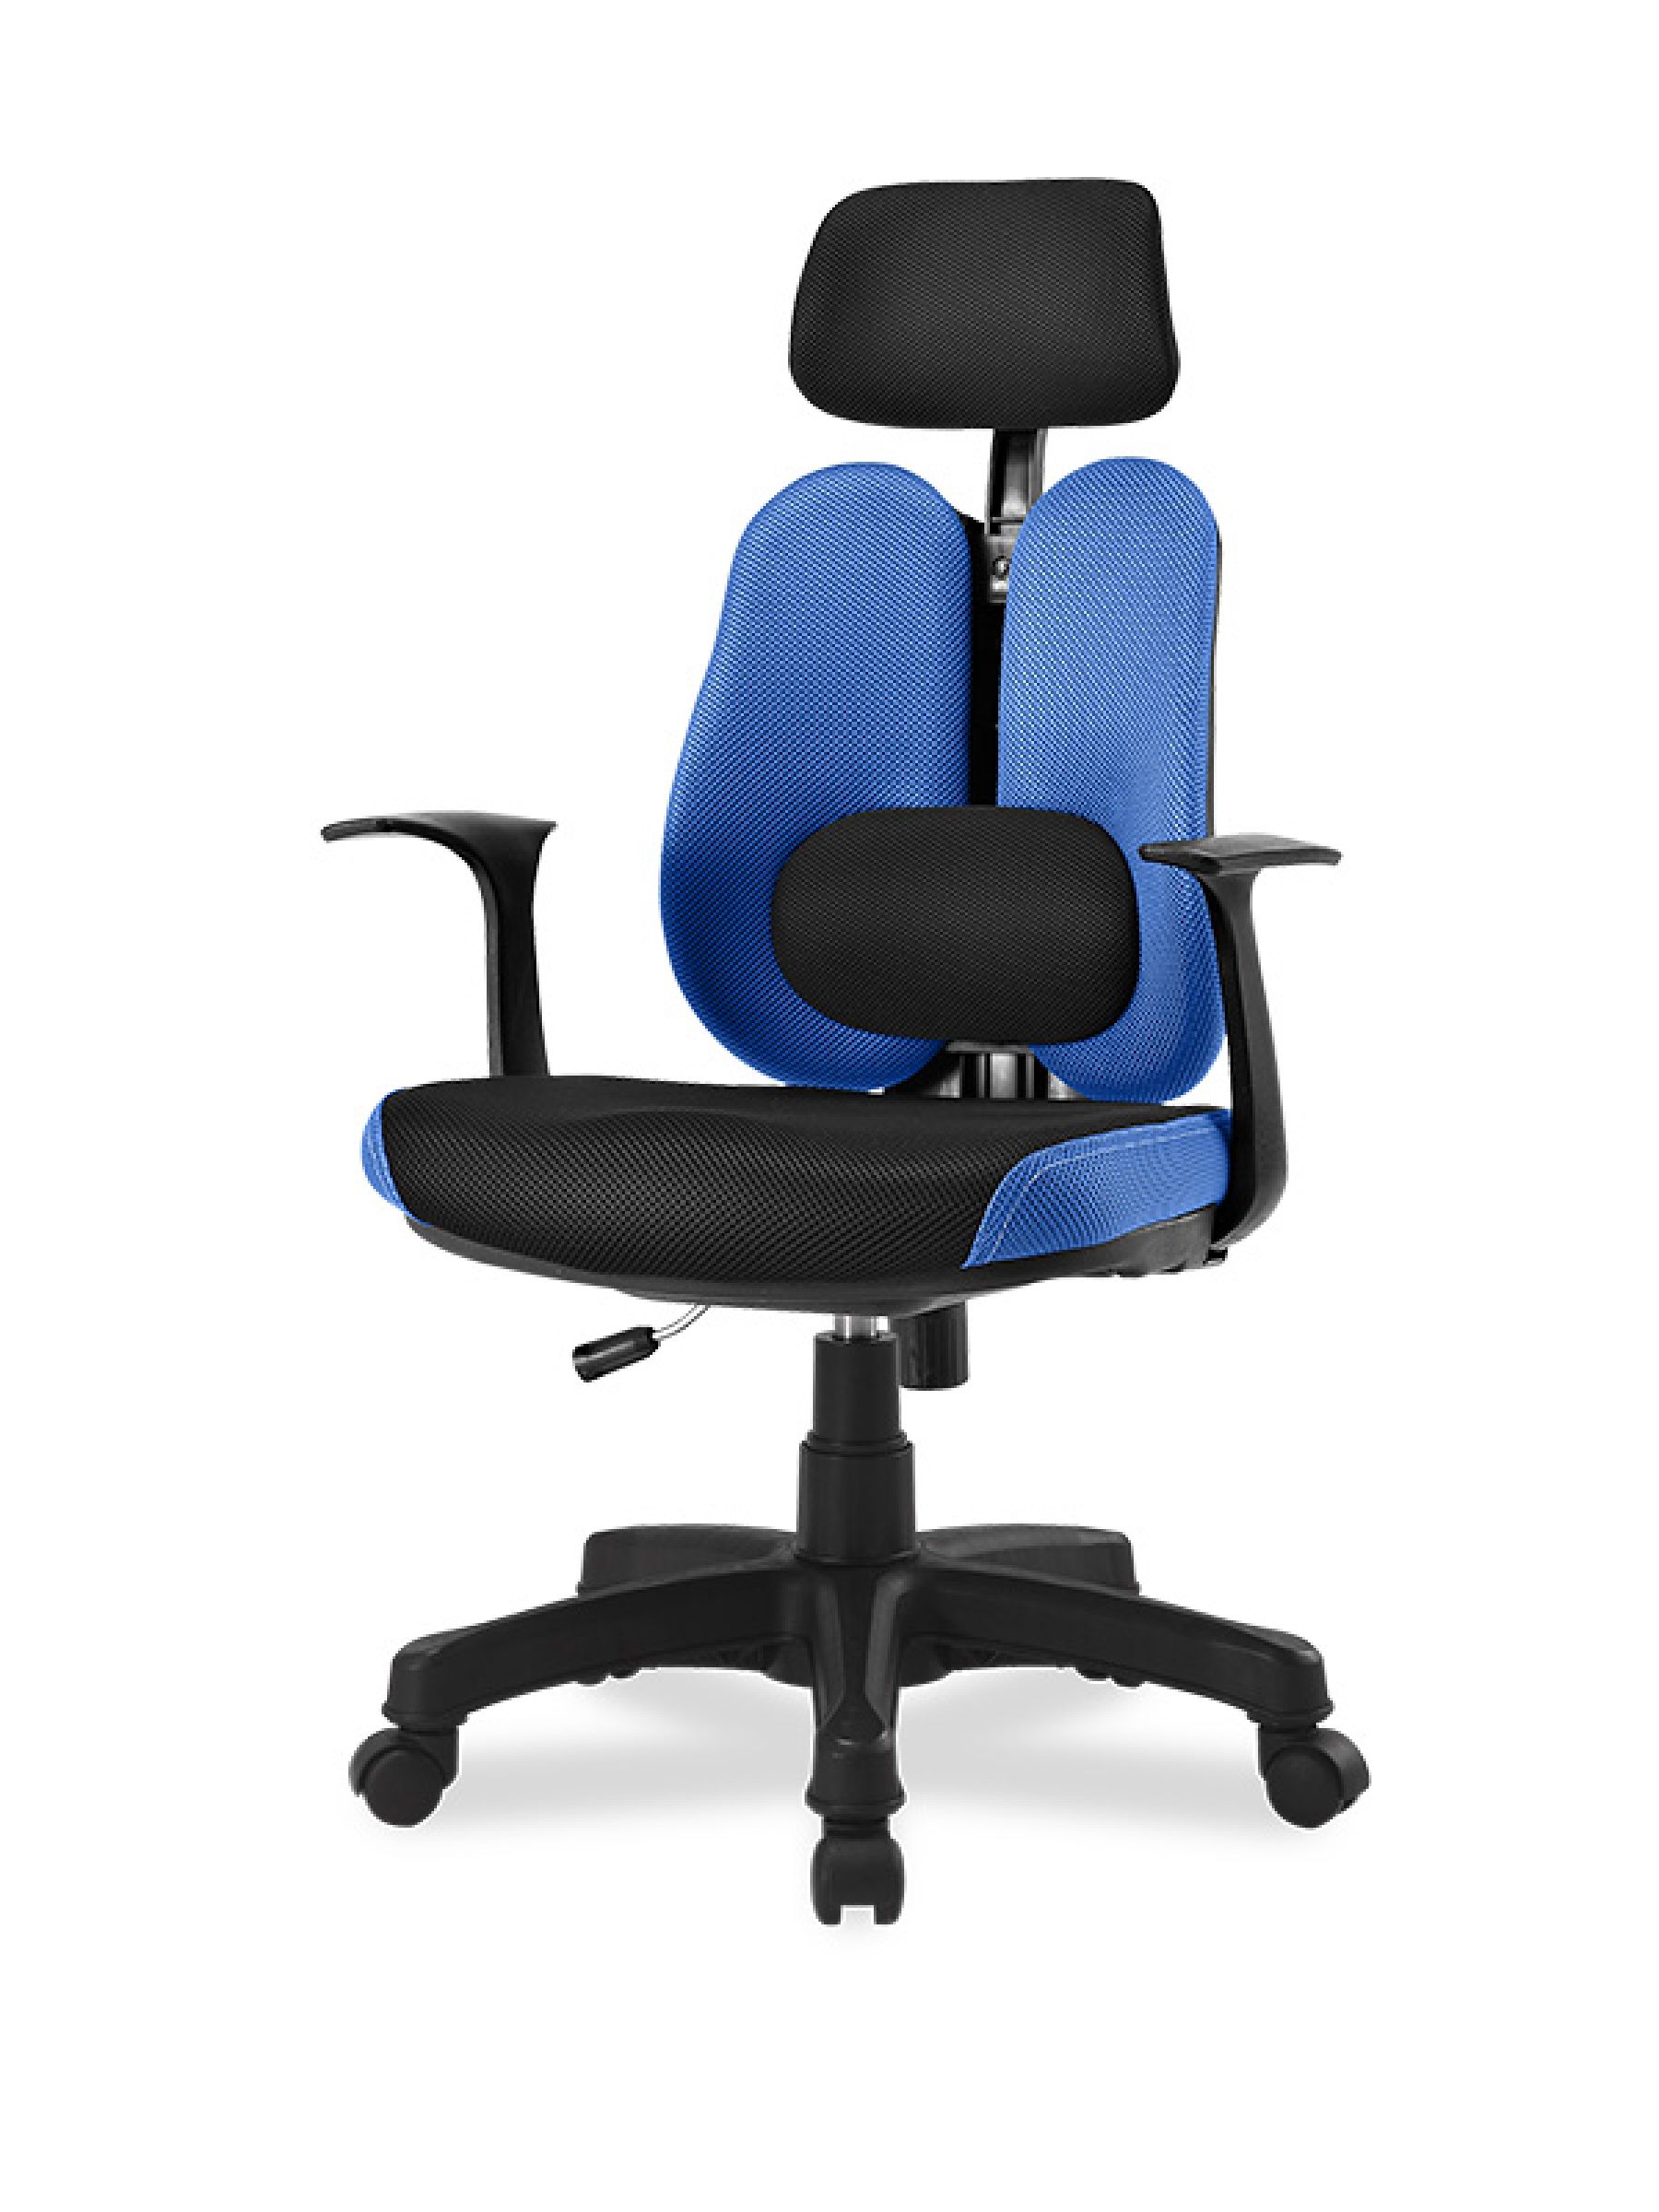 Ортопедическое кресло с двойной спинкой и поясничным валиком Synif DUO Gini синий, черный